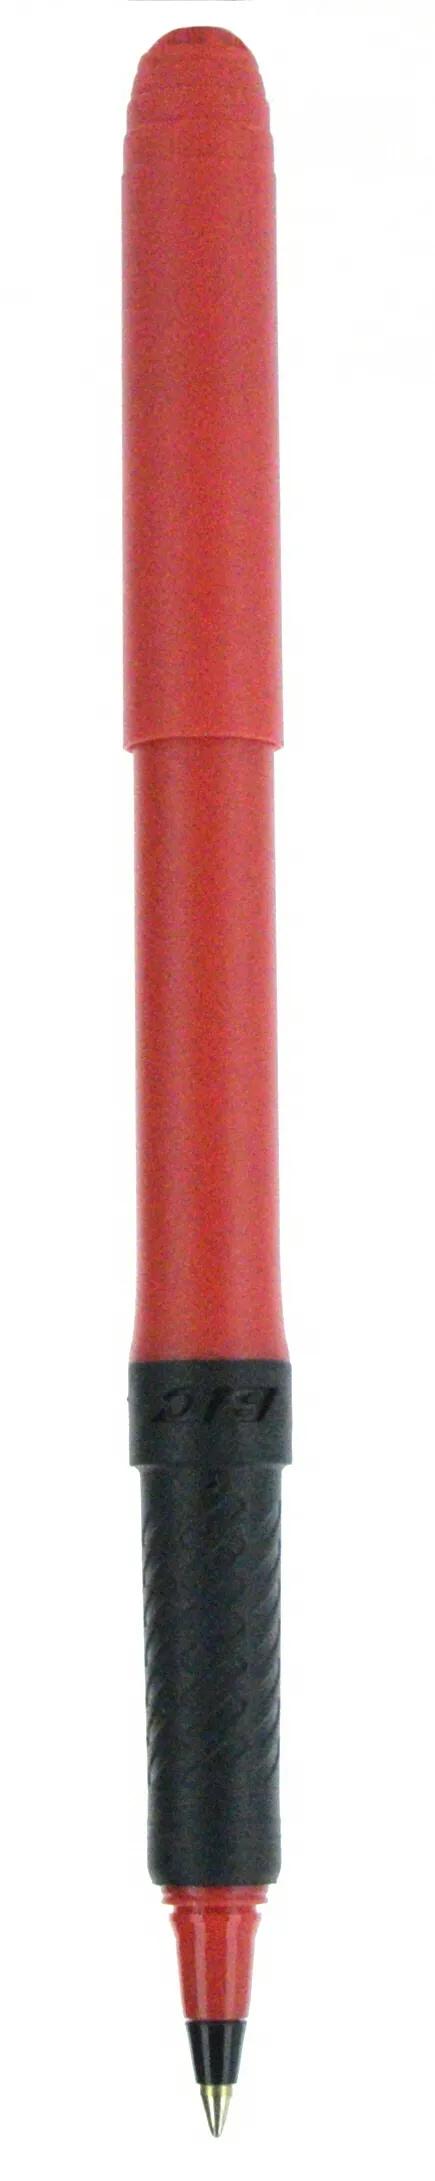 BIC® Grip Roller Pen 86 of 147